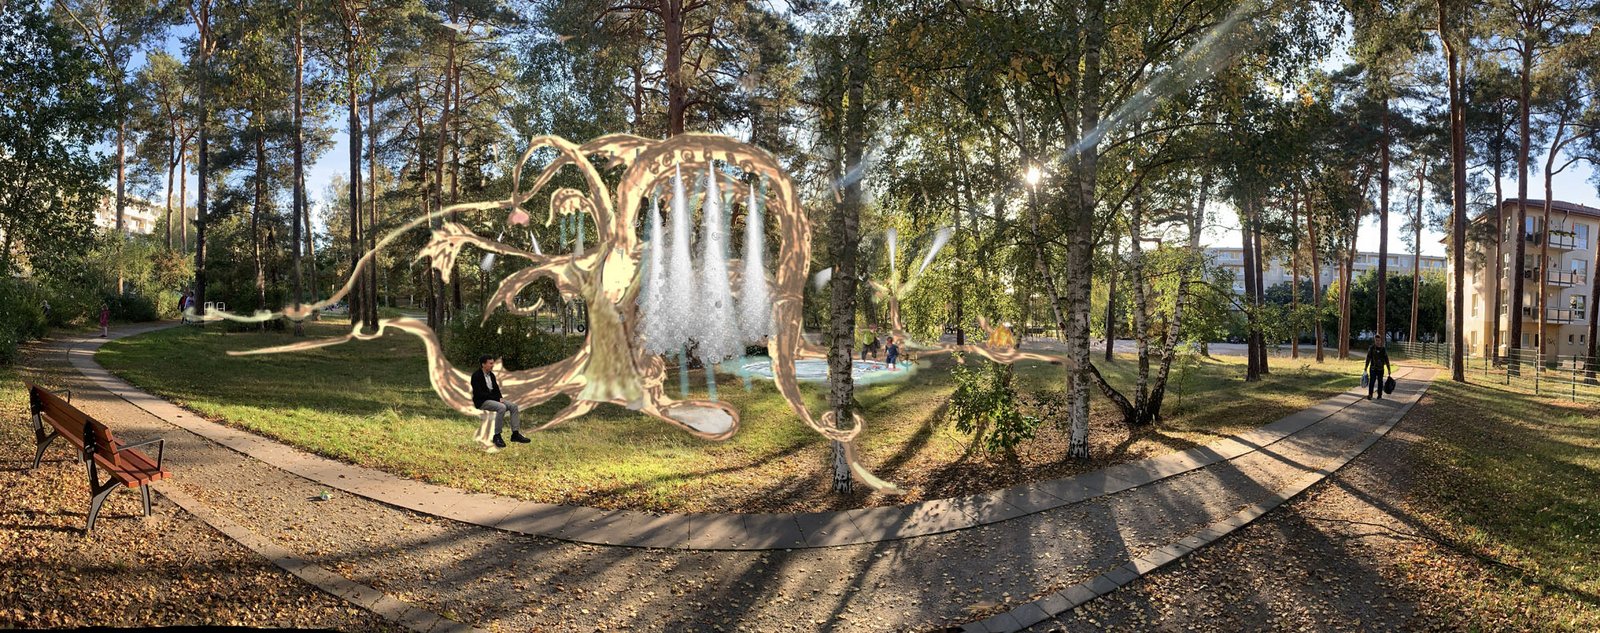 Visualisierung des Wasserspielplatzes von Künstlerin Laure Prouvost zwischen den Wohnblöcken von Eberswalde